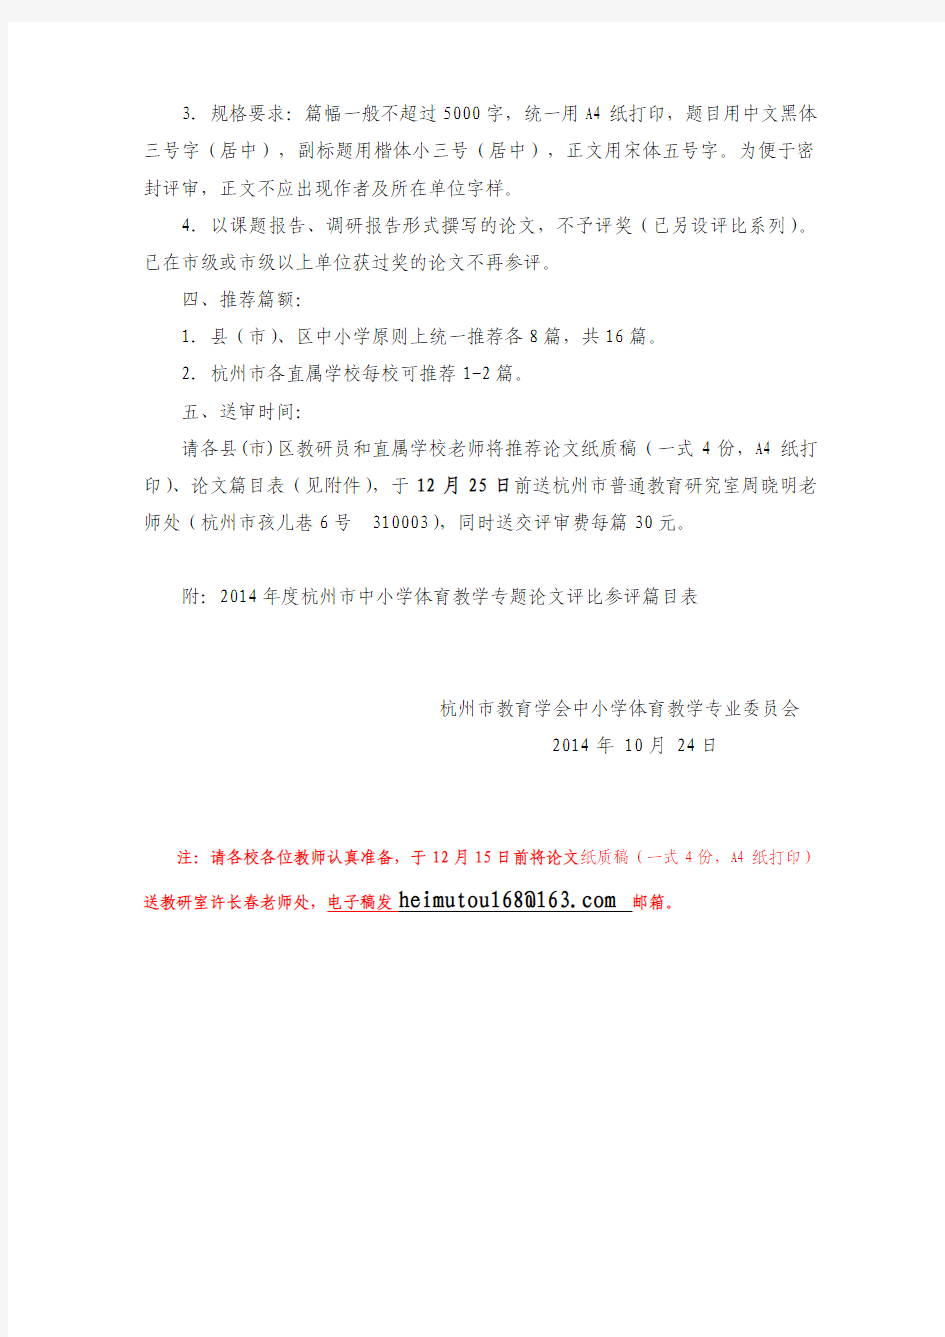 2014杭州杭州市学会论文评比通知 - 副本